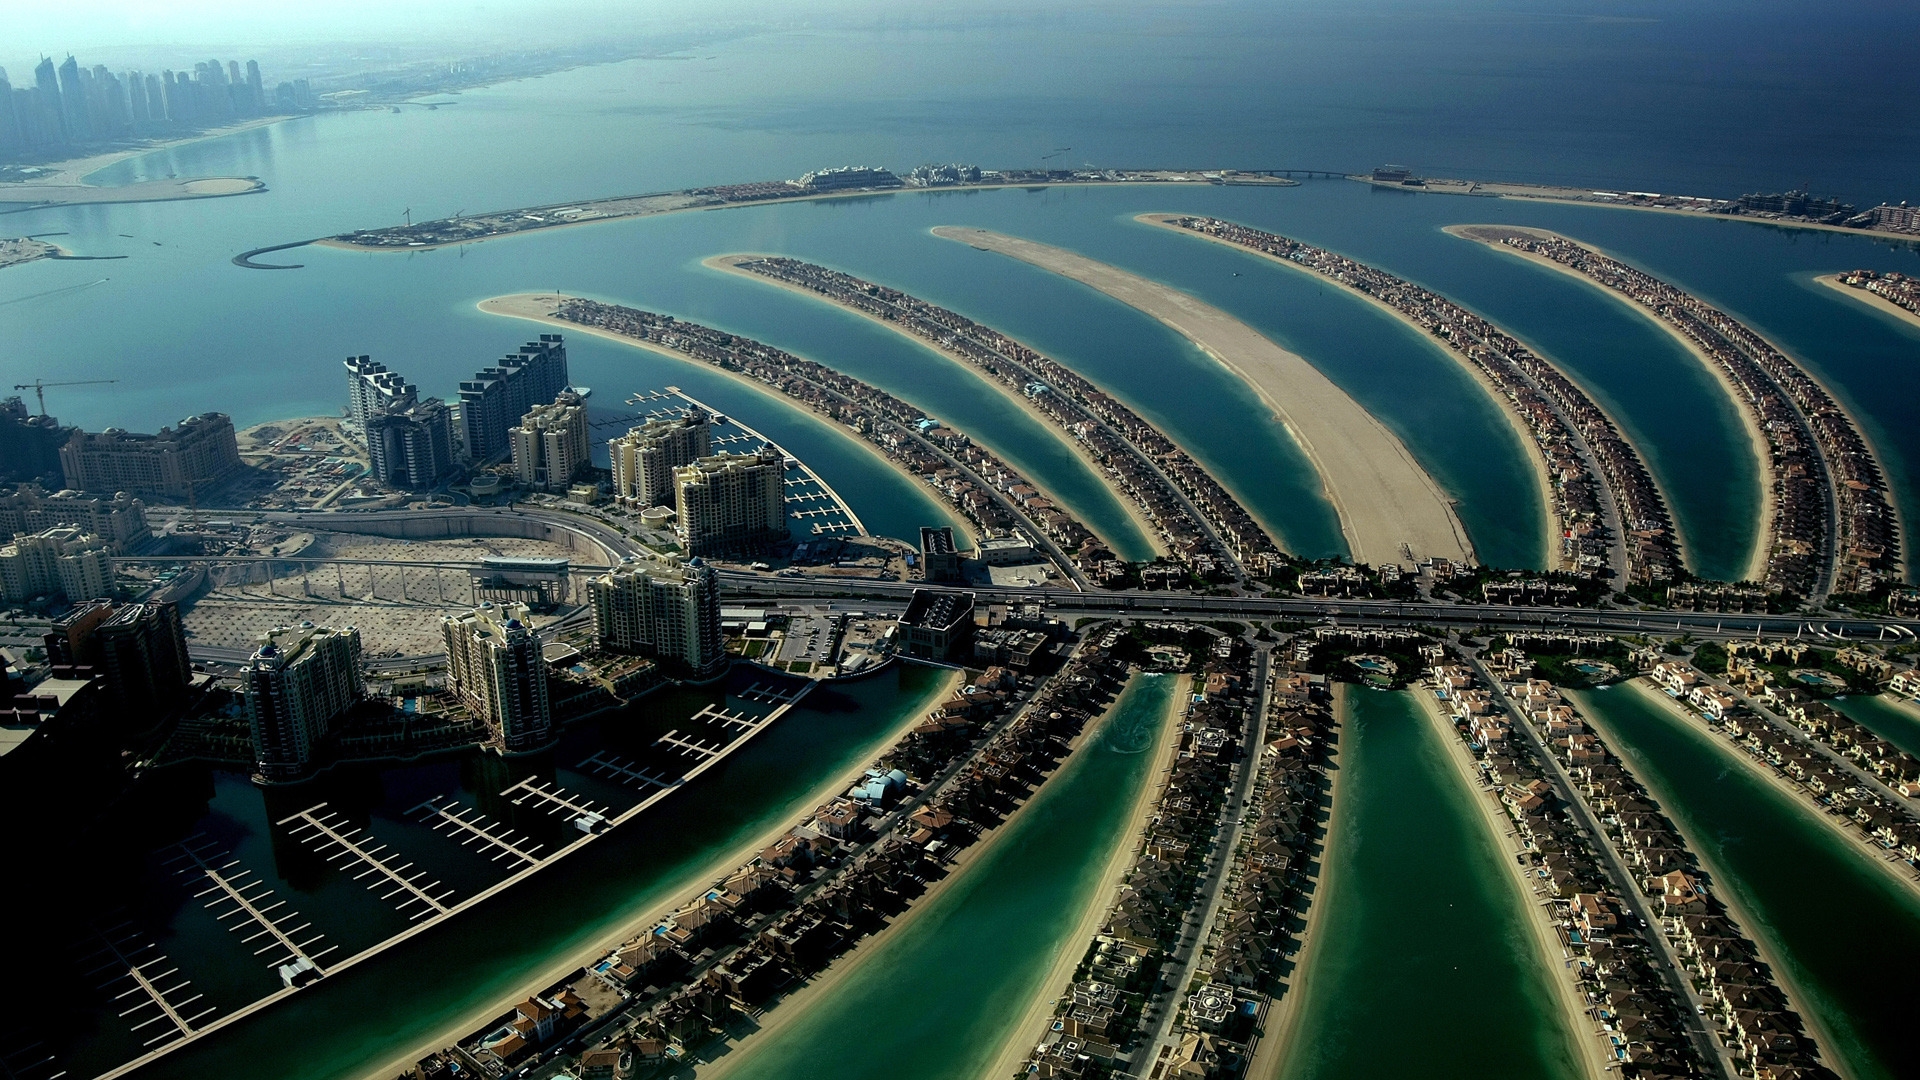 Dubai Palm Island for 1920 x 1080 HDTV 1080p resolution